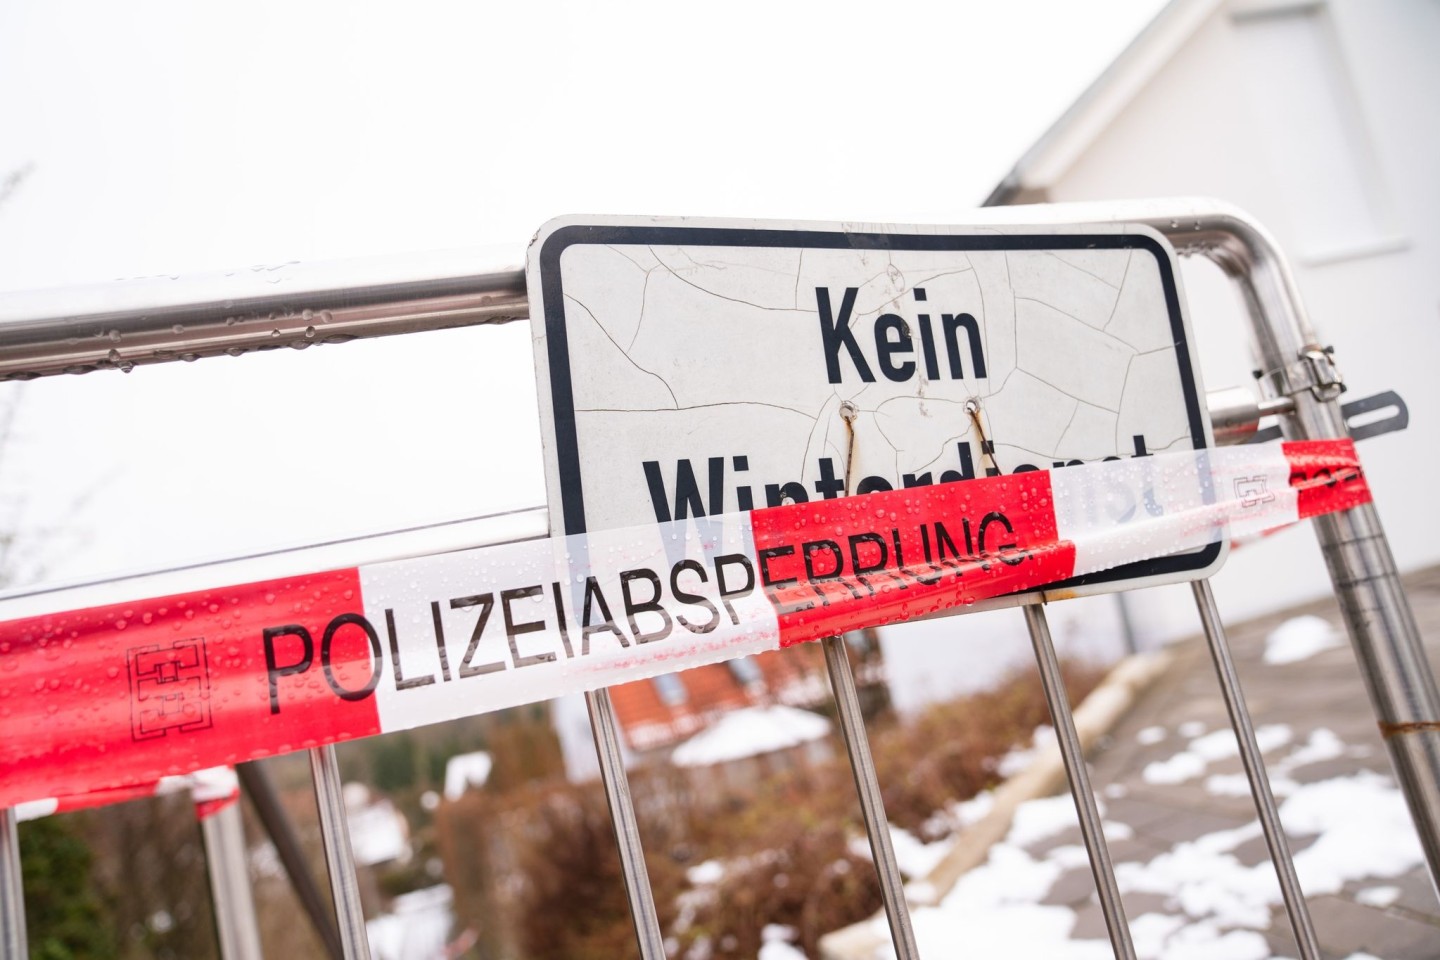 Die Polizei sperrte das Haus in Mistelbach ab, in dem im Januar ein Ärztepaar getötet wurde. Nun wurde Anklage erhoben.